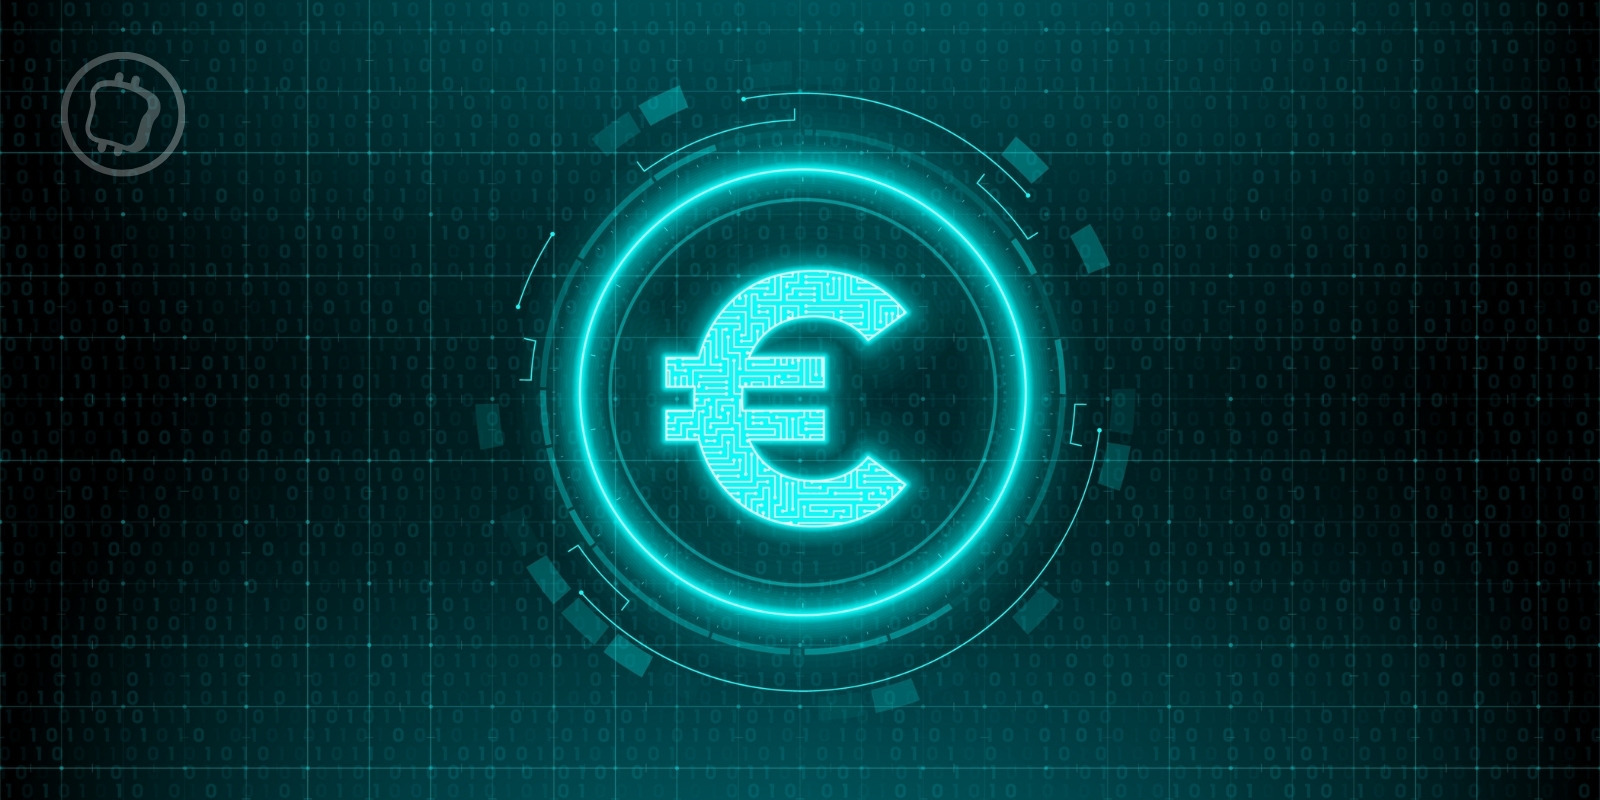 Le déploiement de l'euro numérique enfin daté – Quels seront ses usages ?